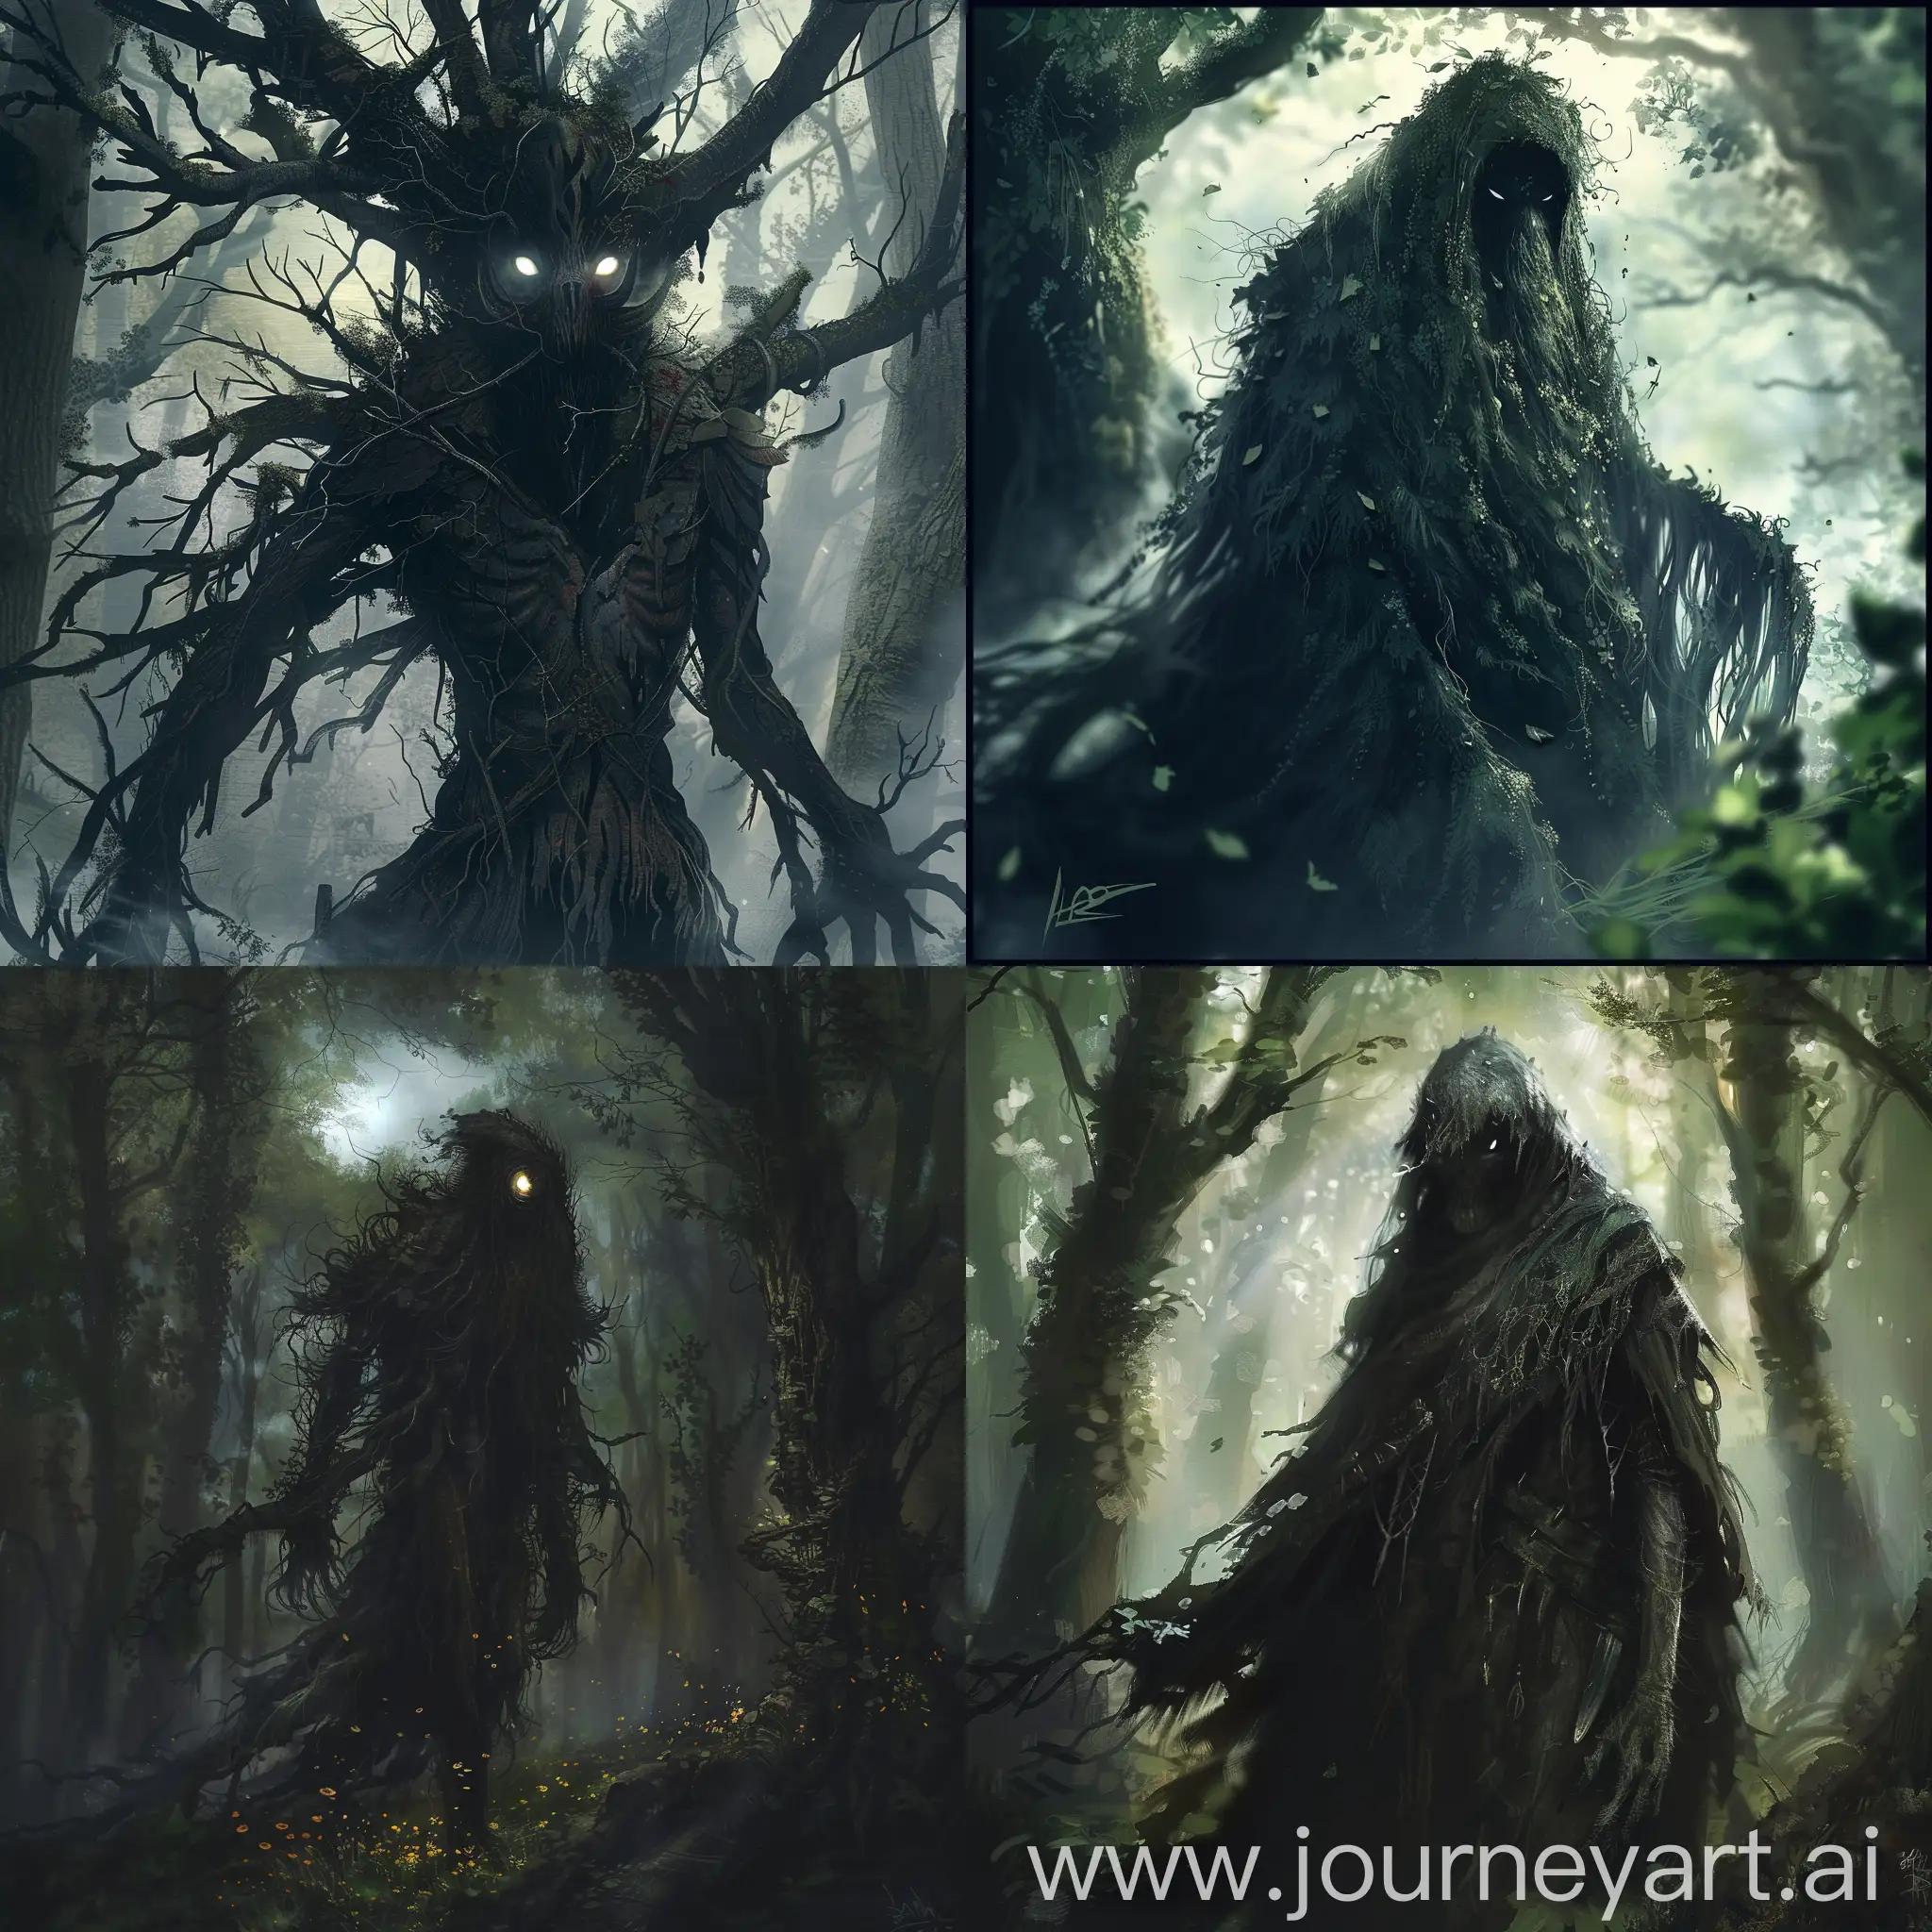 Enigmatic-Dark-Forest-Spirit-in-Square-Aspect-Ratio